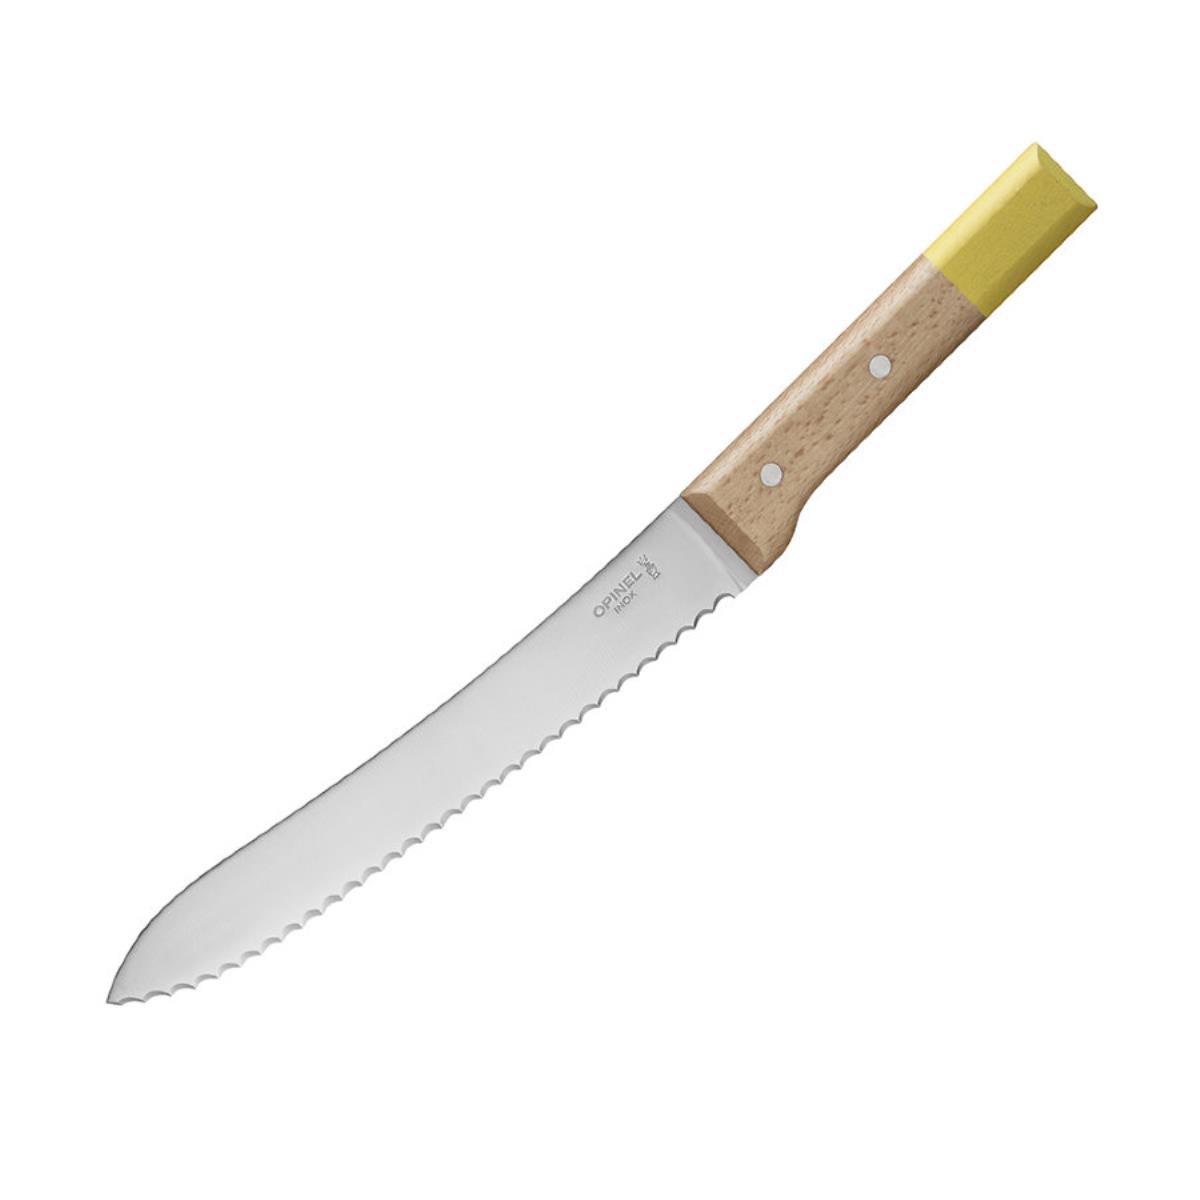 Нож кухонный №116 VRI Parallele для хлеба (нерж. сталь, рукоять бук, длина клинка 21 см) OPINEL нож кухонный для хлеба 20 см